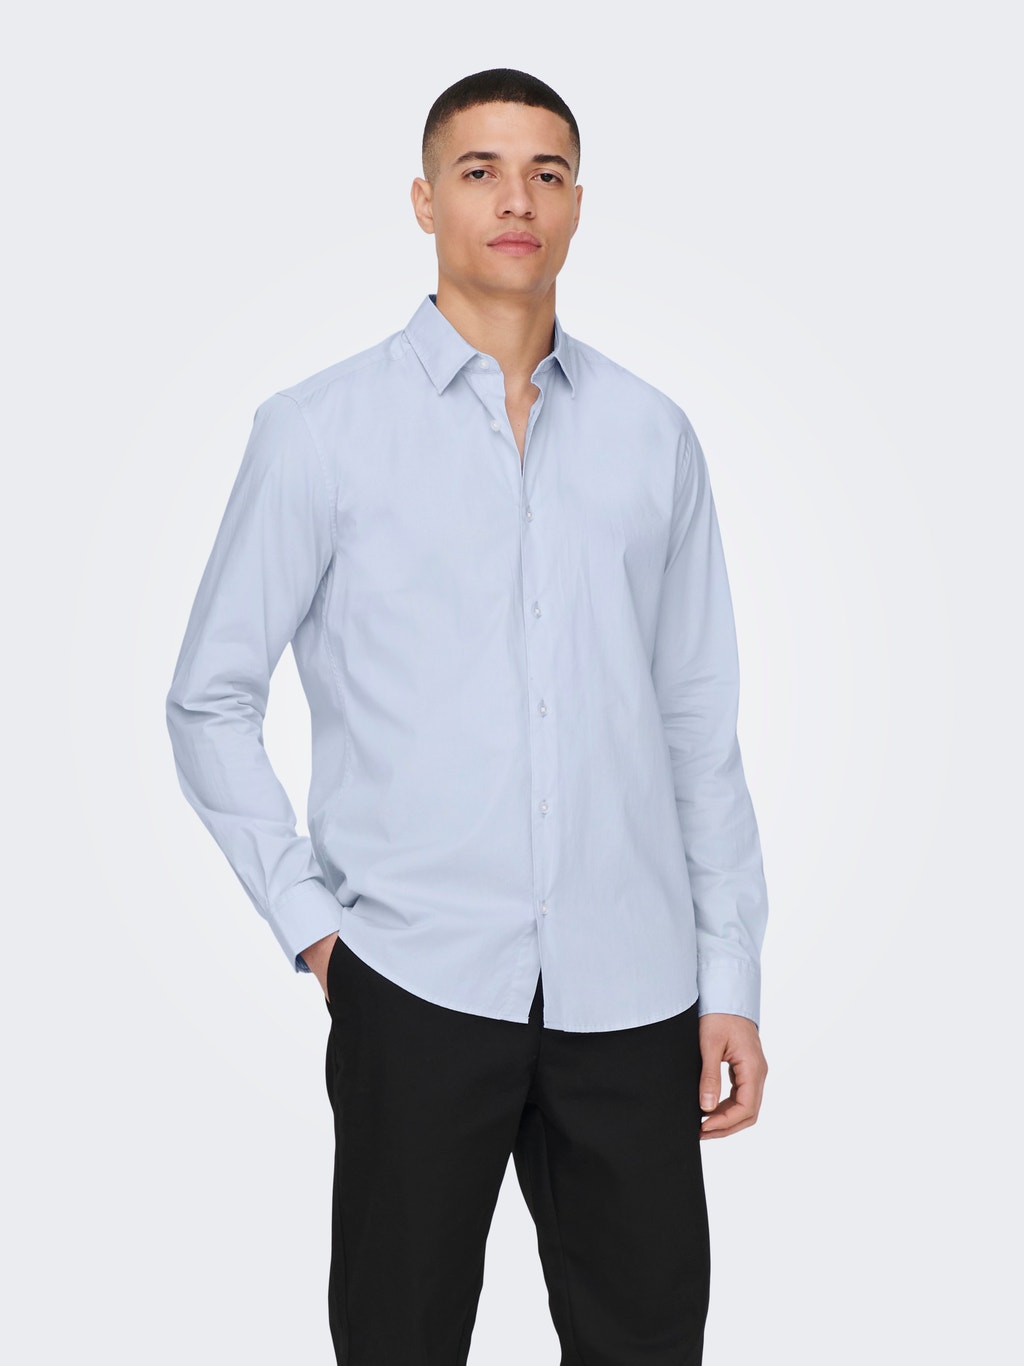 Dos grados equilibrado Obediencia Camisas Corte slim Cuello de camisa | Azul intermedio | ONLY & SONS®